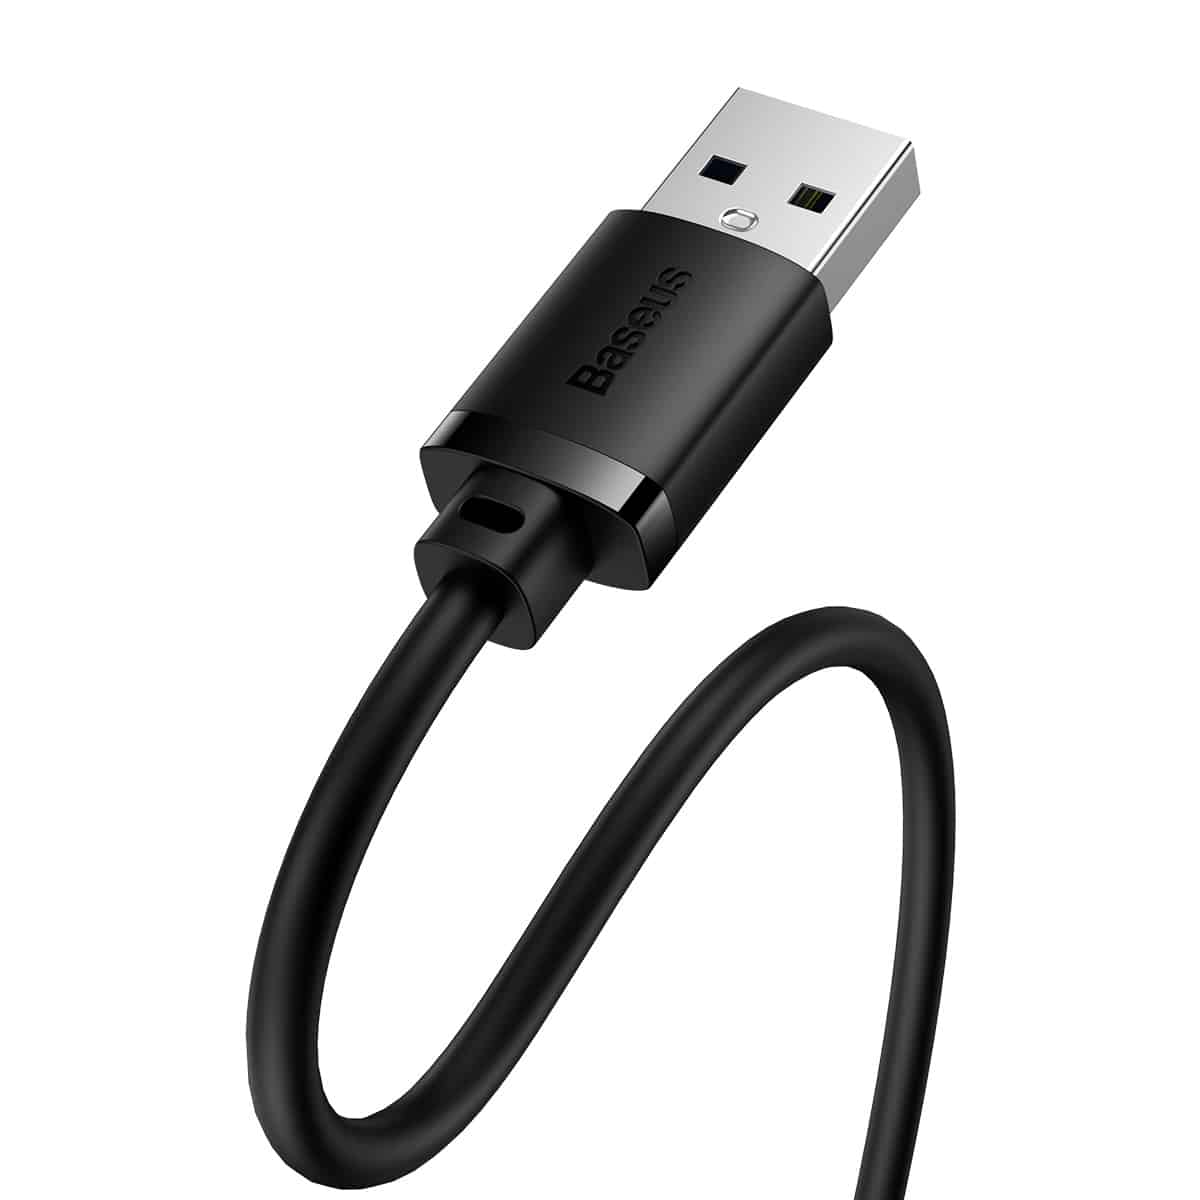 BASEUS AIRJOY SERIES USB3.0 EXTENSION CABLE CLUSTER BLACK